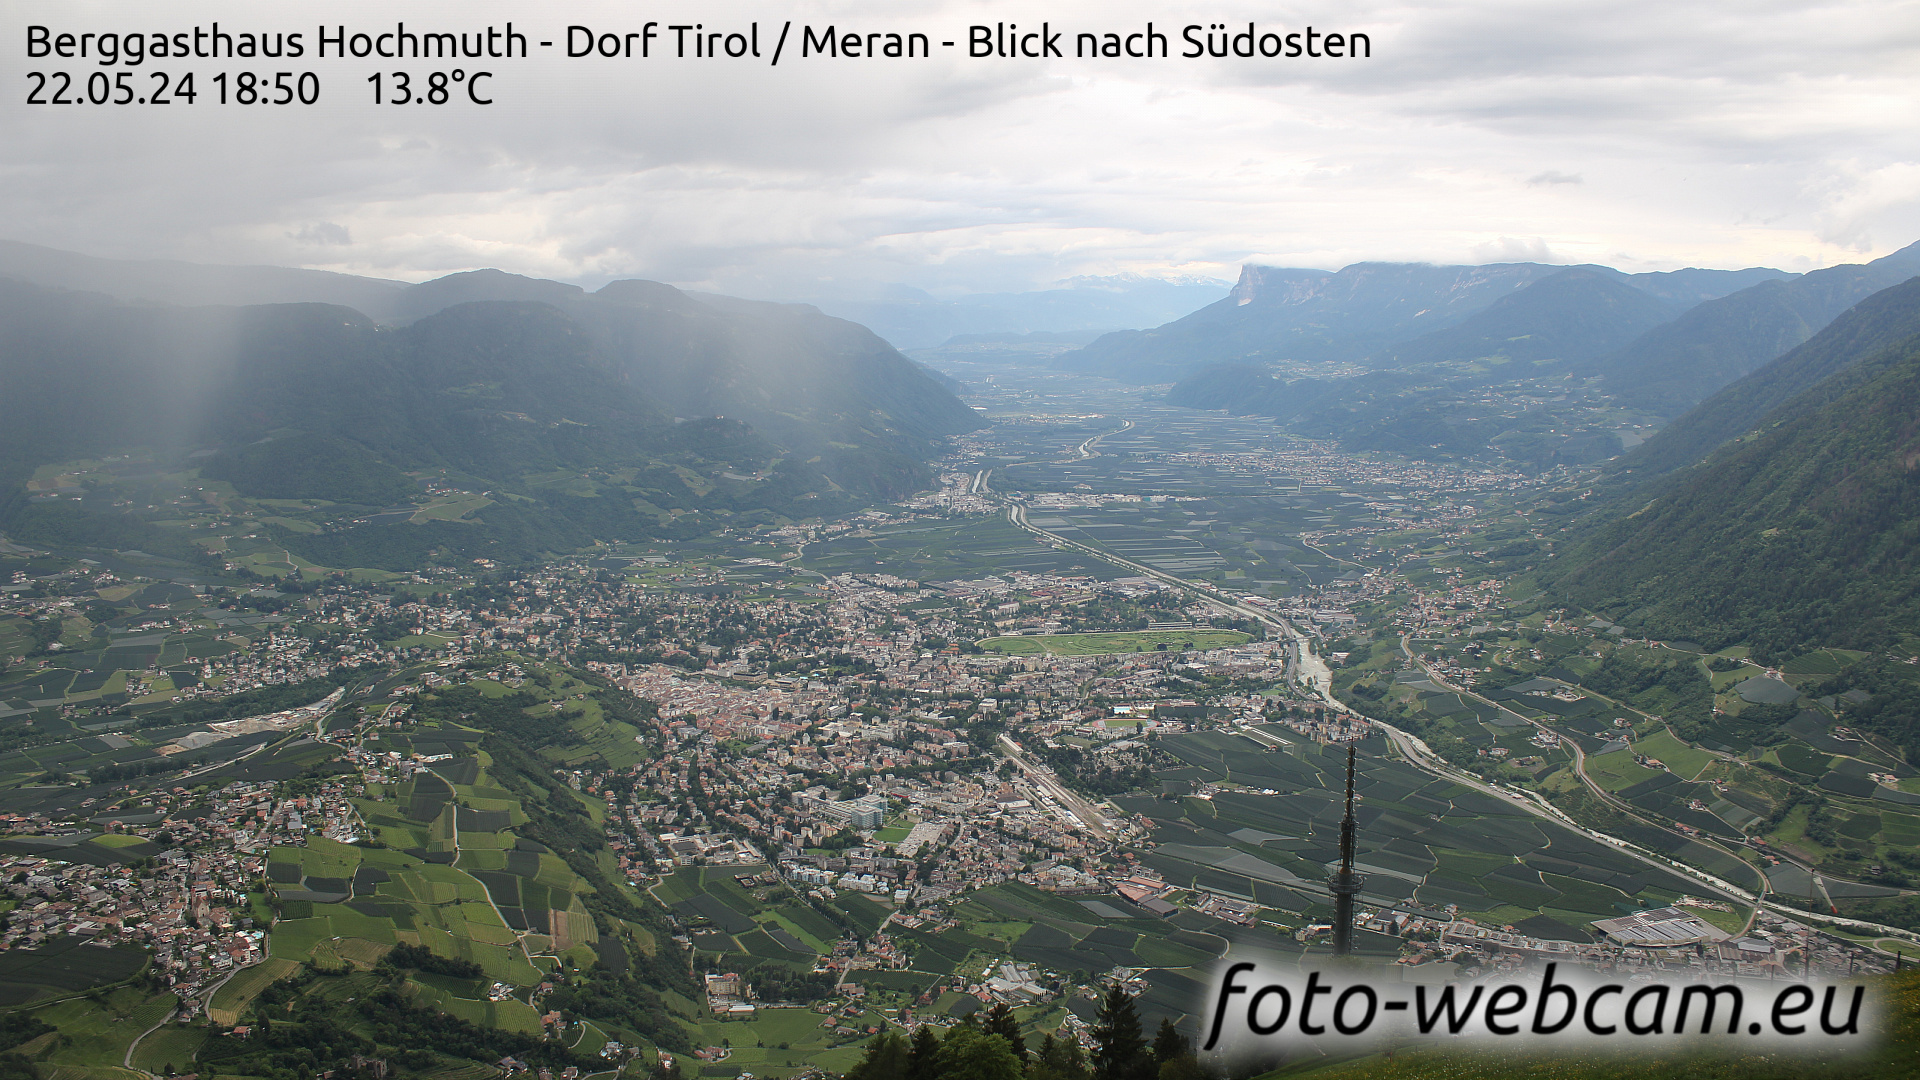 Dorf Tirol Tir. 18:56